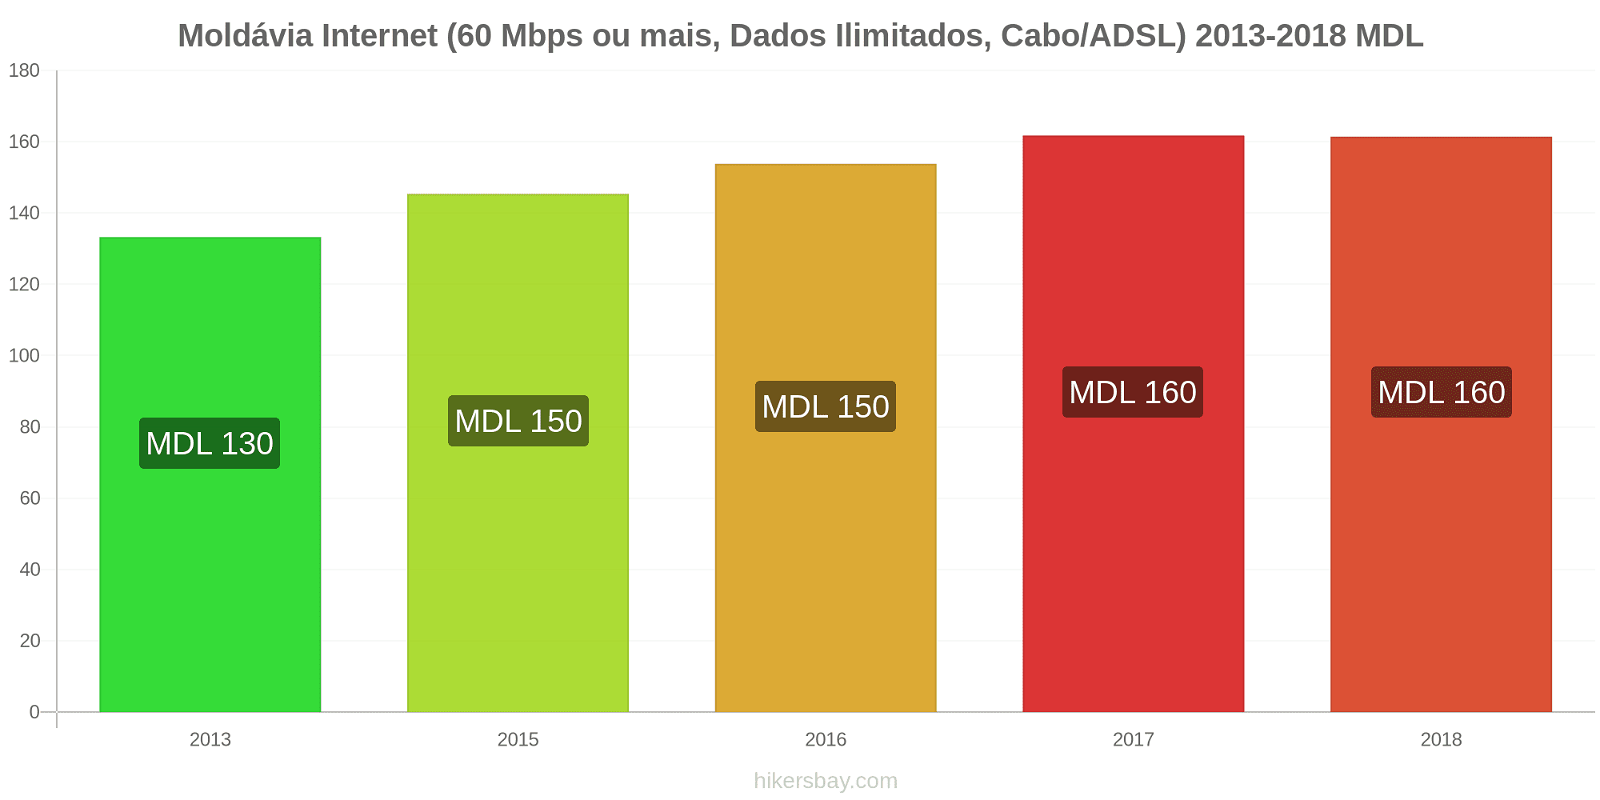 Moldávia mudanças de preços Internet (60 Mbps ou mais, dados ilimitados, cabo/ADSL) hikersbay.com